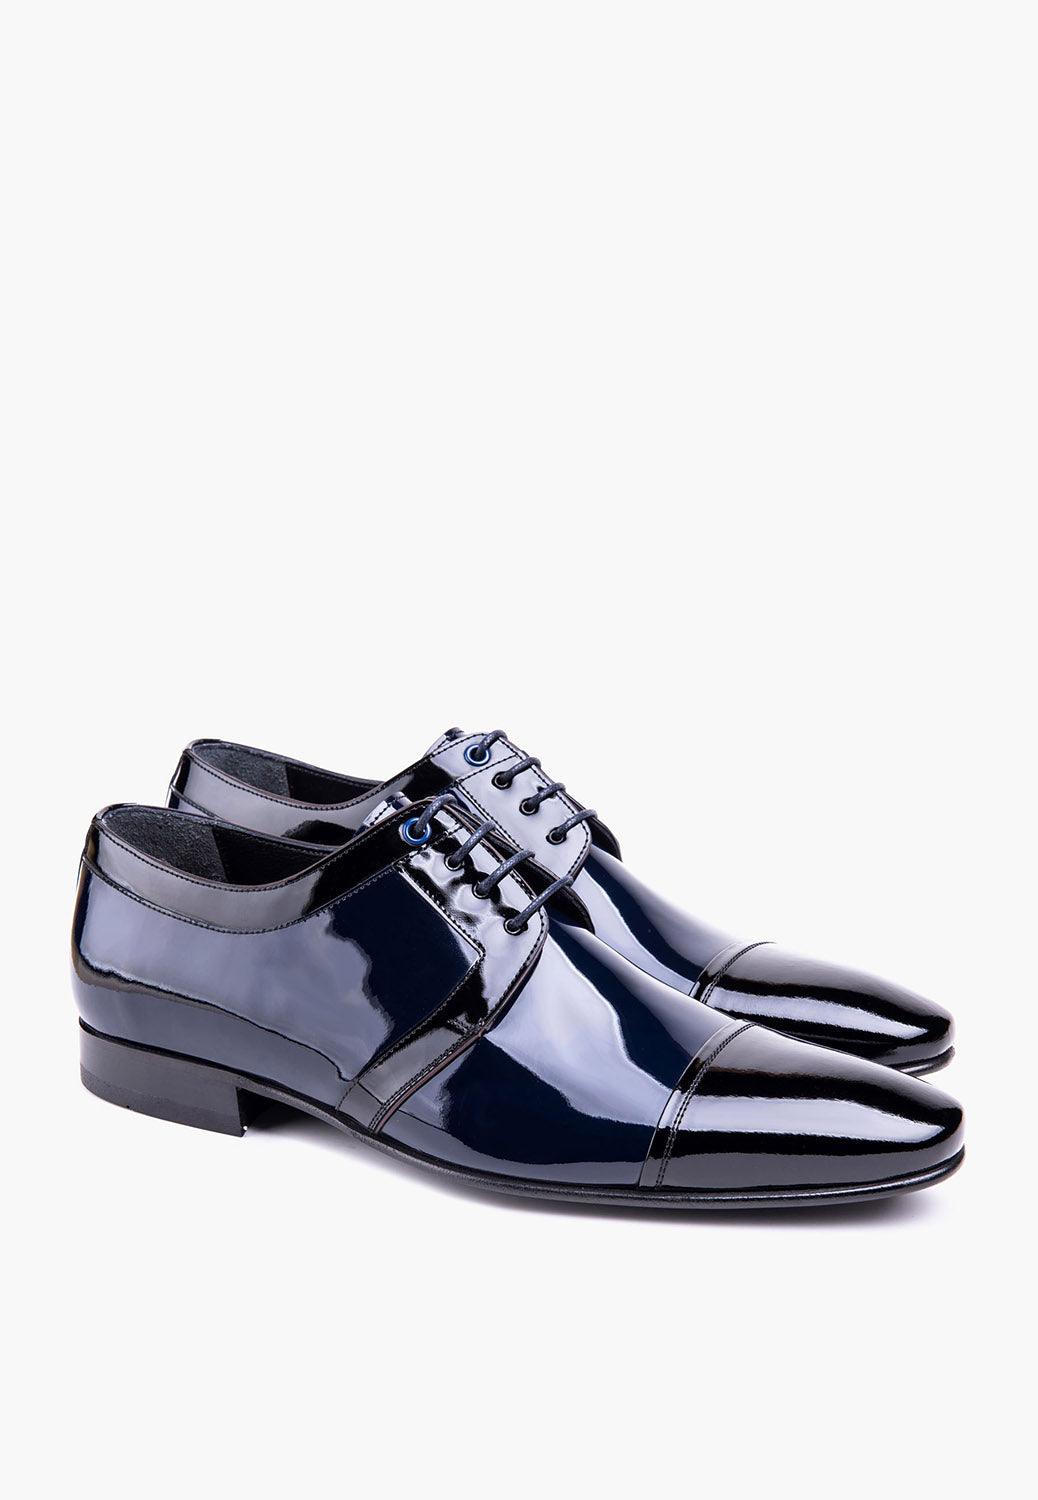 Elegance Lace Up Navy-Black - SEPOL Shoes